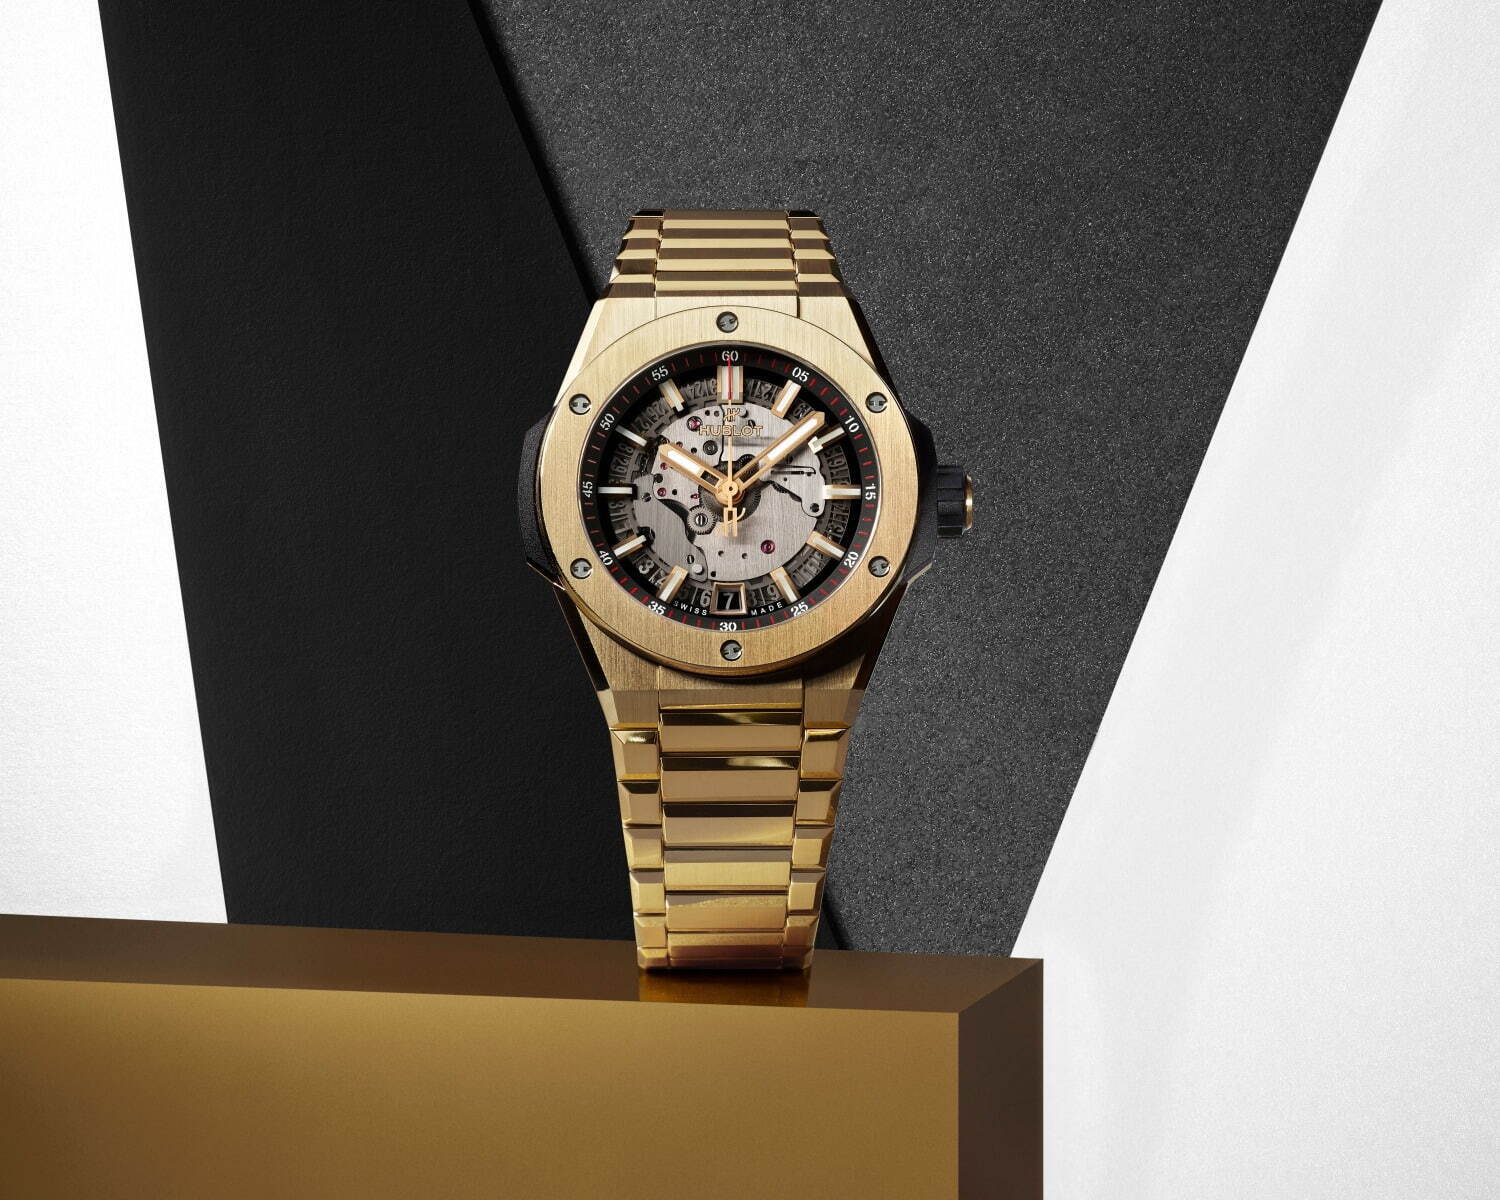 ウブロ新腕時計、薄型ケースのブレスレットモデル「ビッグ・バン